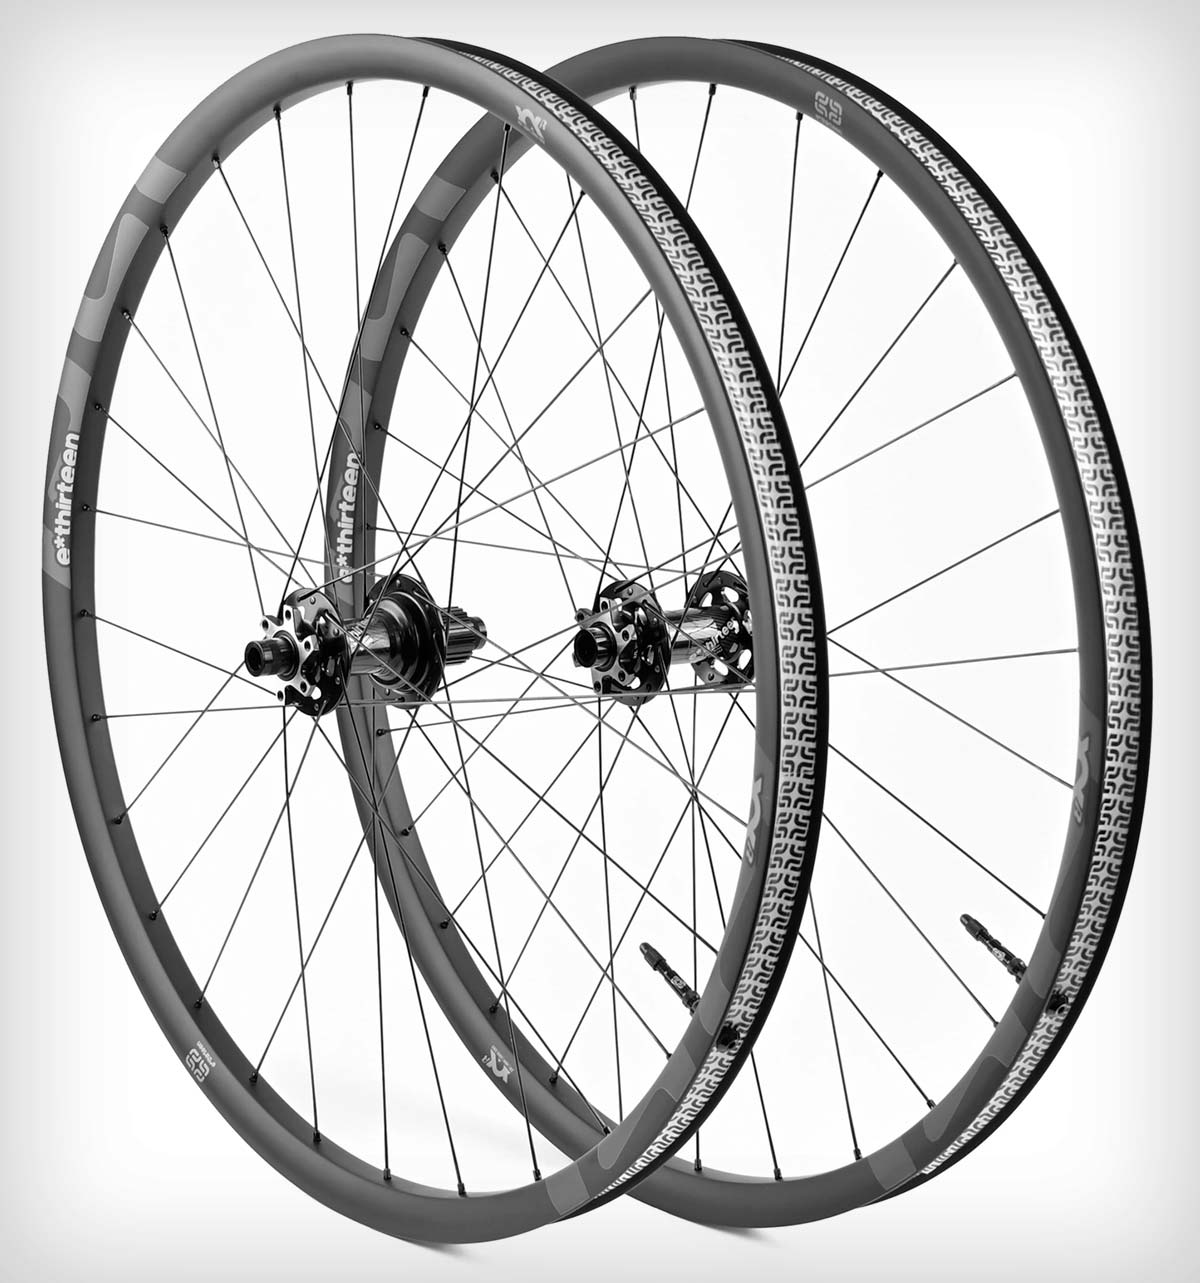 E*thirteen presenta las XCX Race, unas ruedas de carbono ultraligeras para bicis de XC y Trail